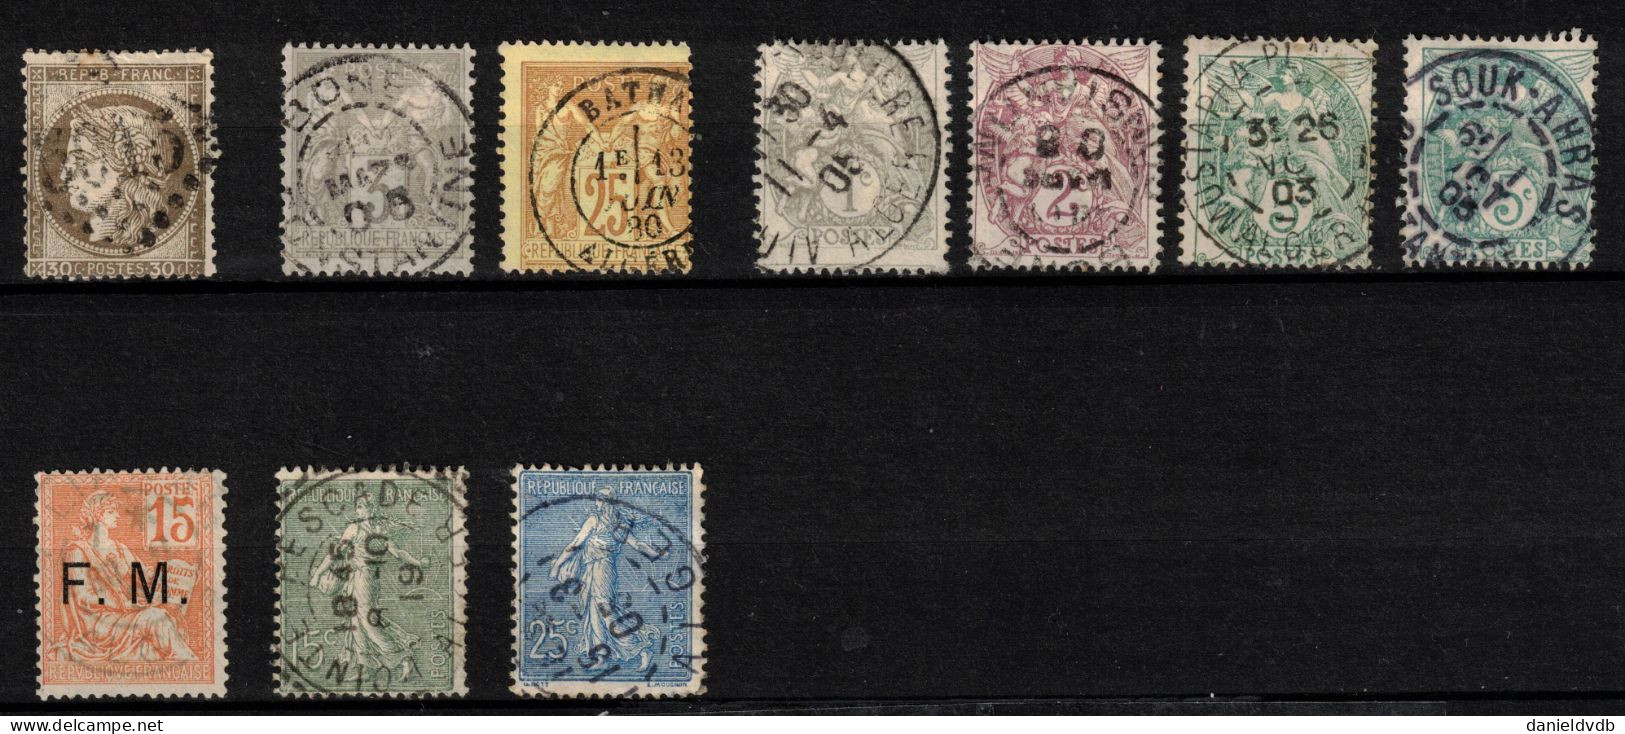 Algérie Française: 10 Timbres Français Oblitérés En Algérie Jusqu'en 1924 - Collections, Lots & Series